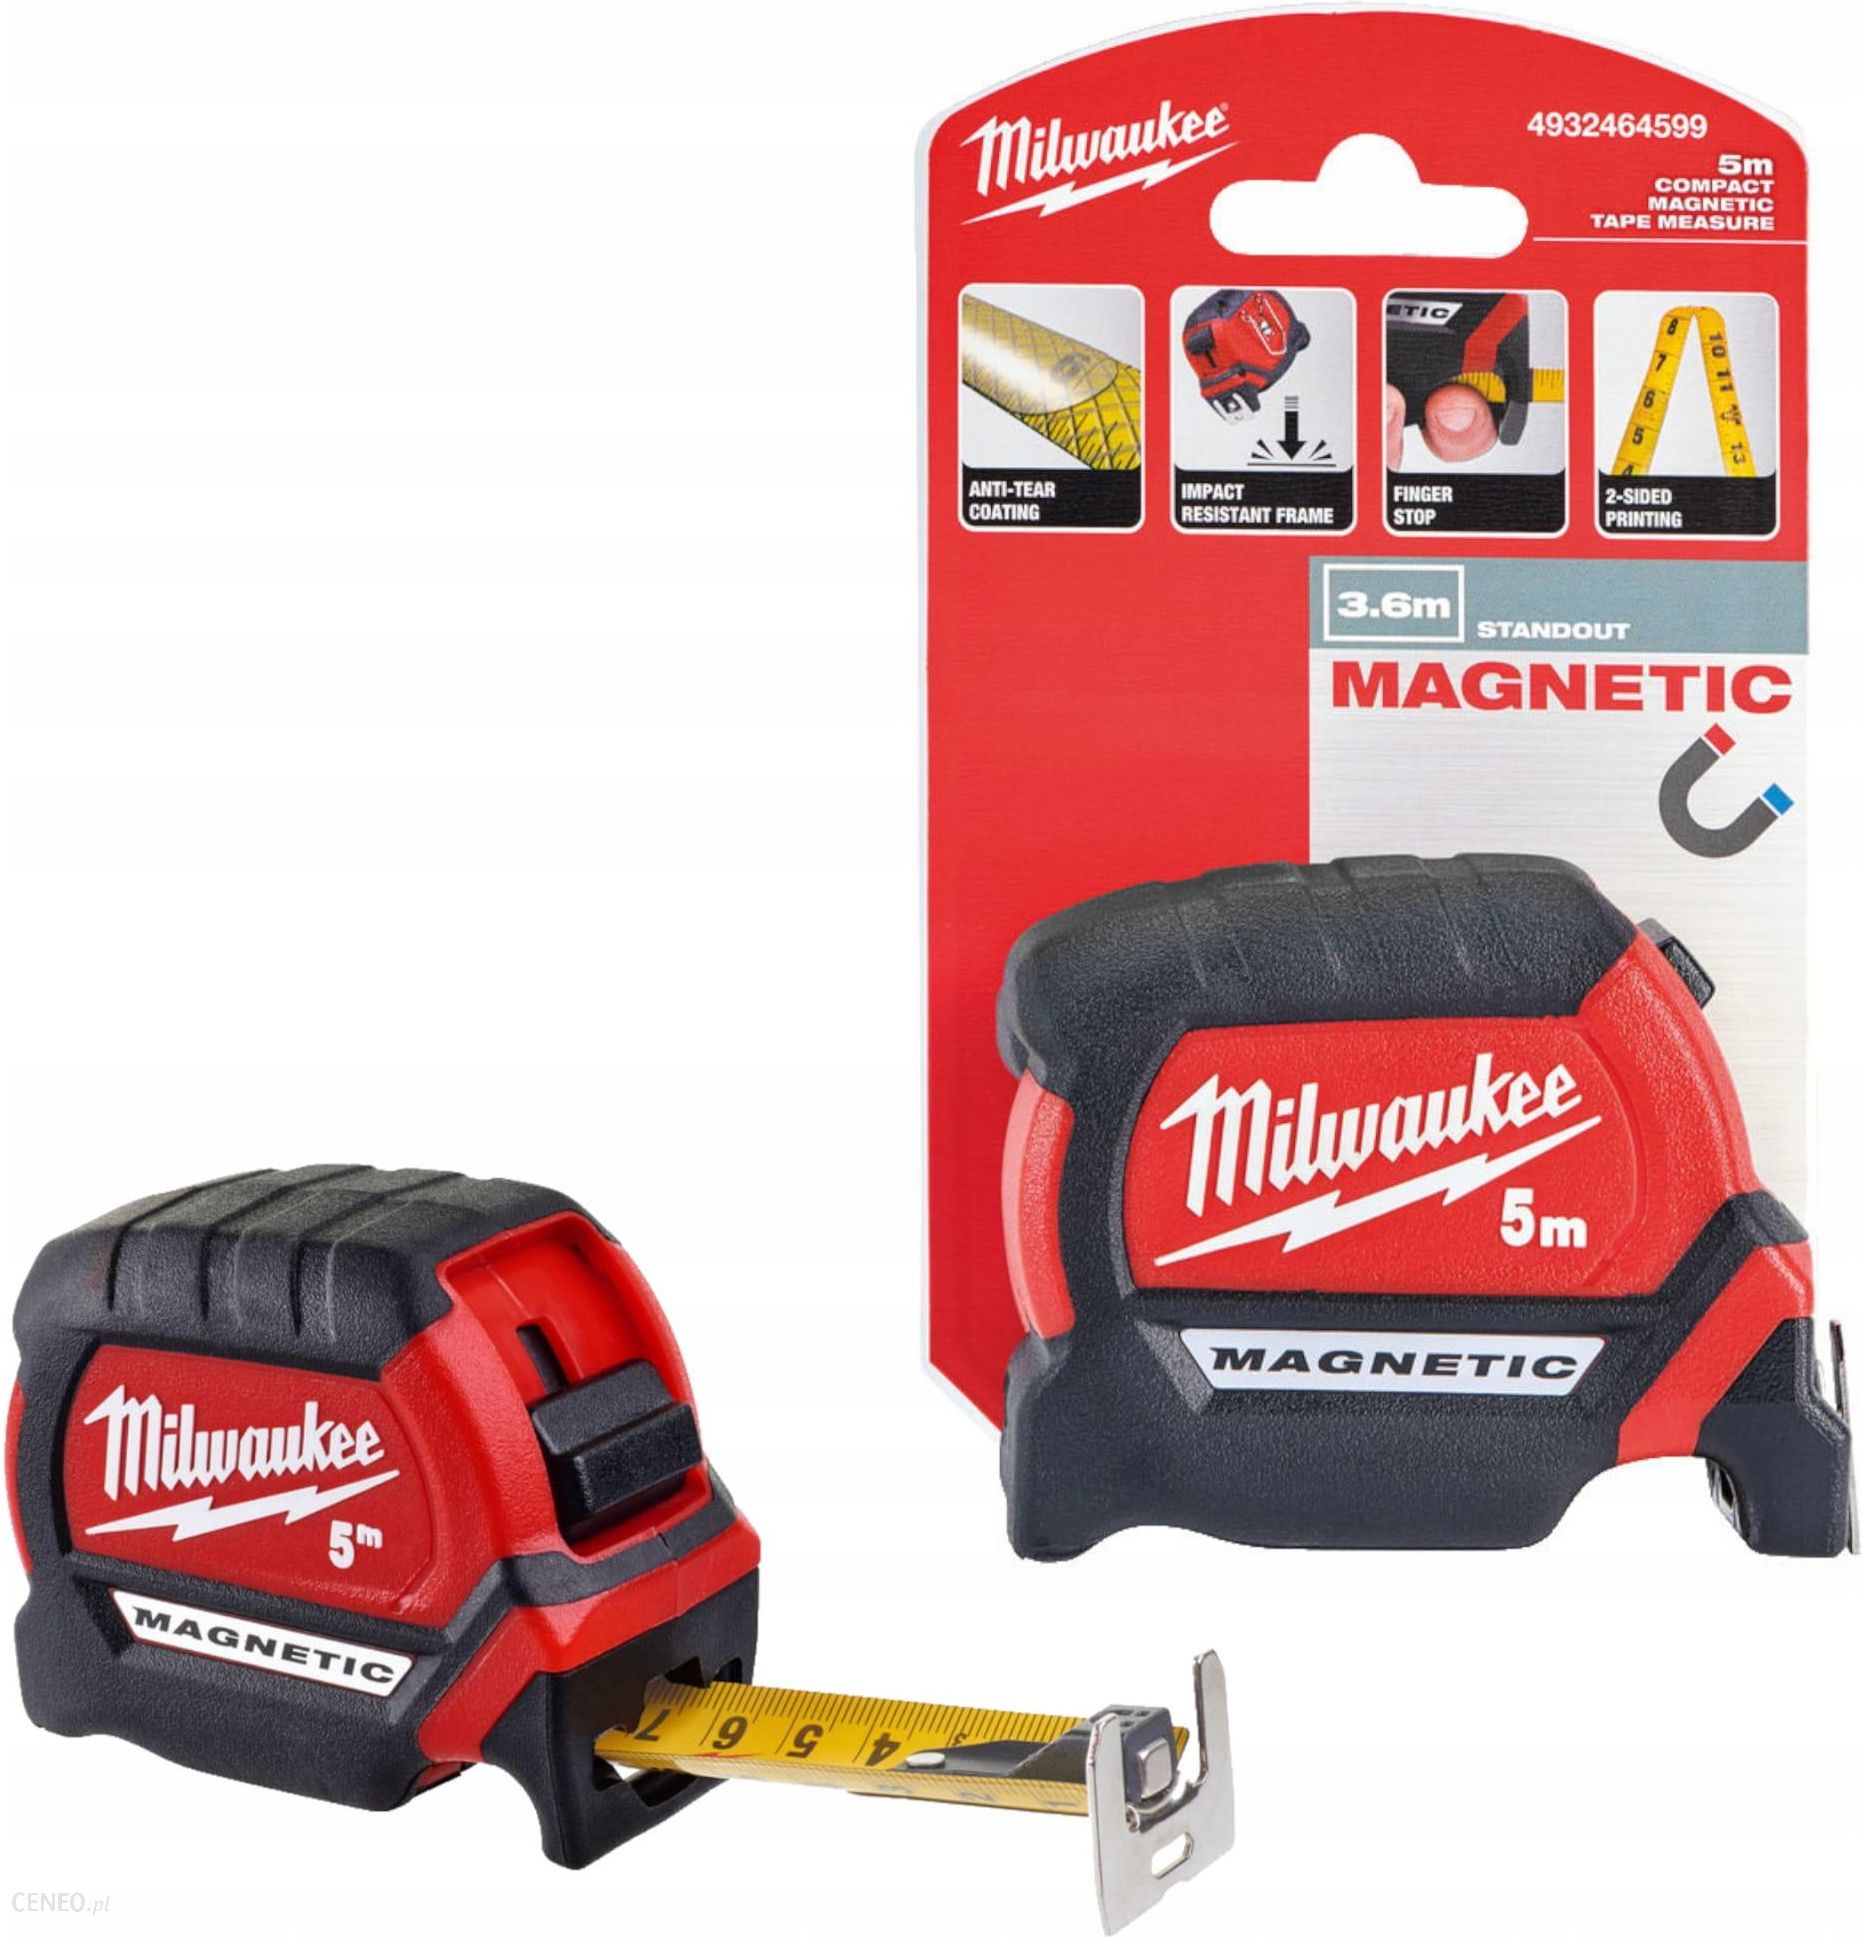 Taśma miernicza Milwaukee Premium Magnetic 5m 4932464599 - Opinie